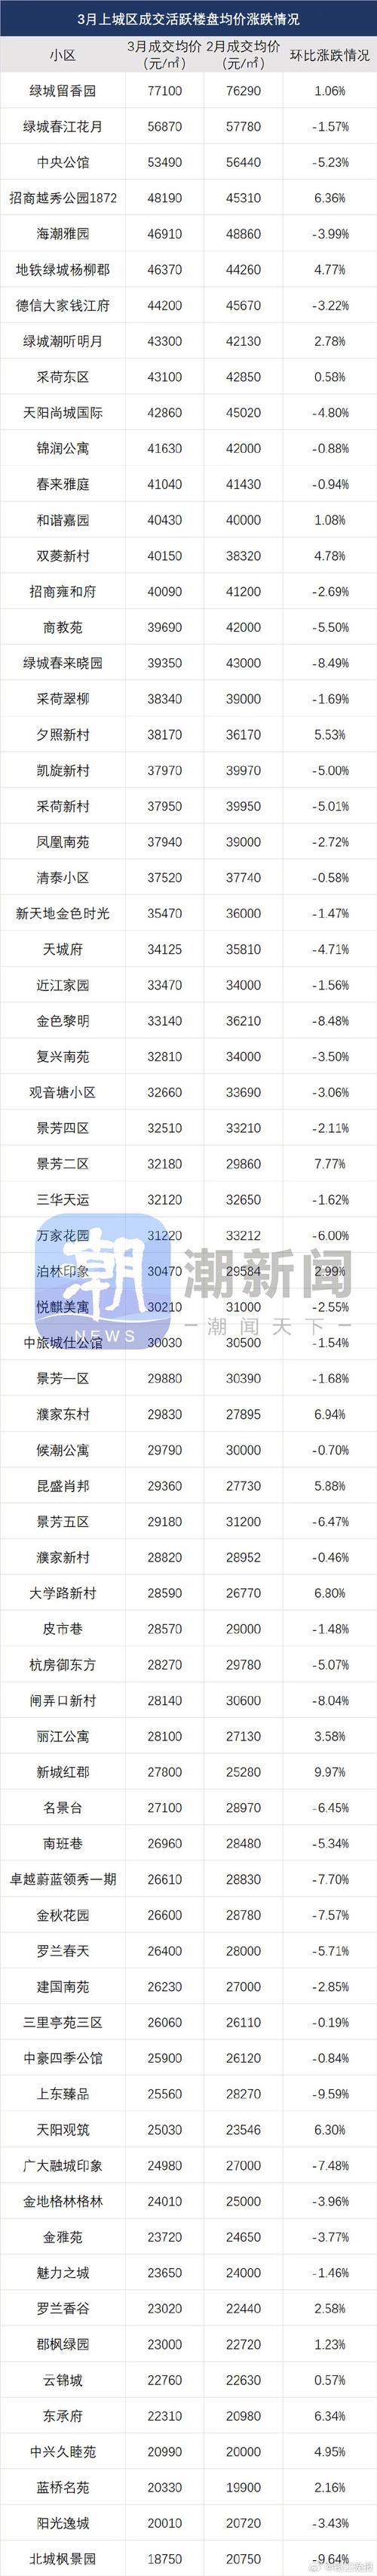 杭州最新二手房价涨跌榜出炉